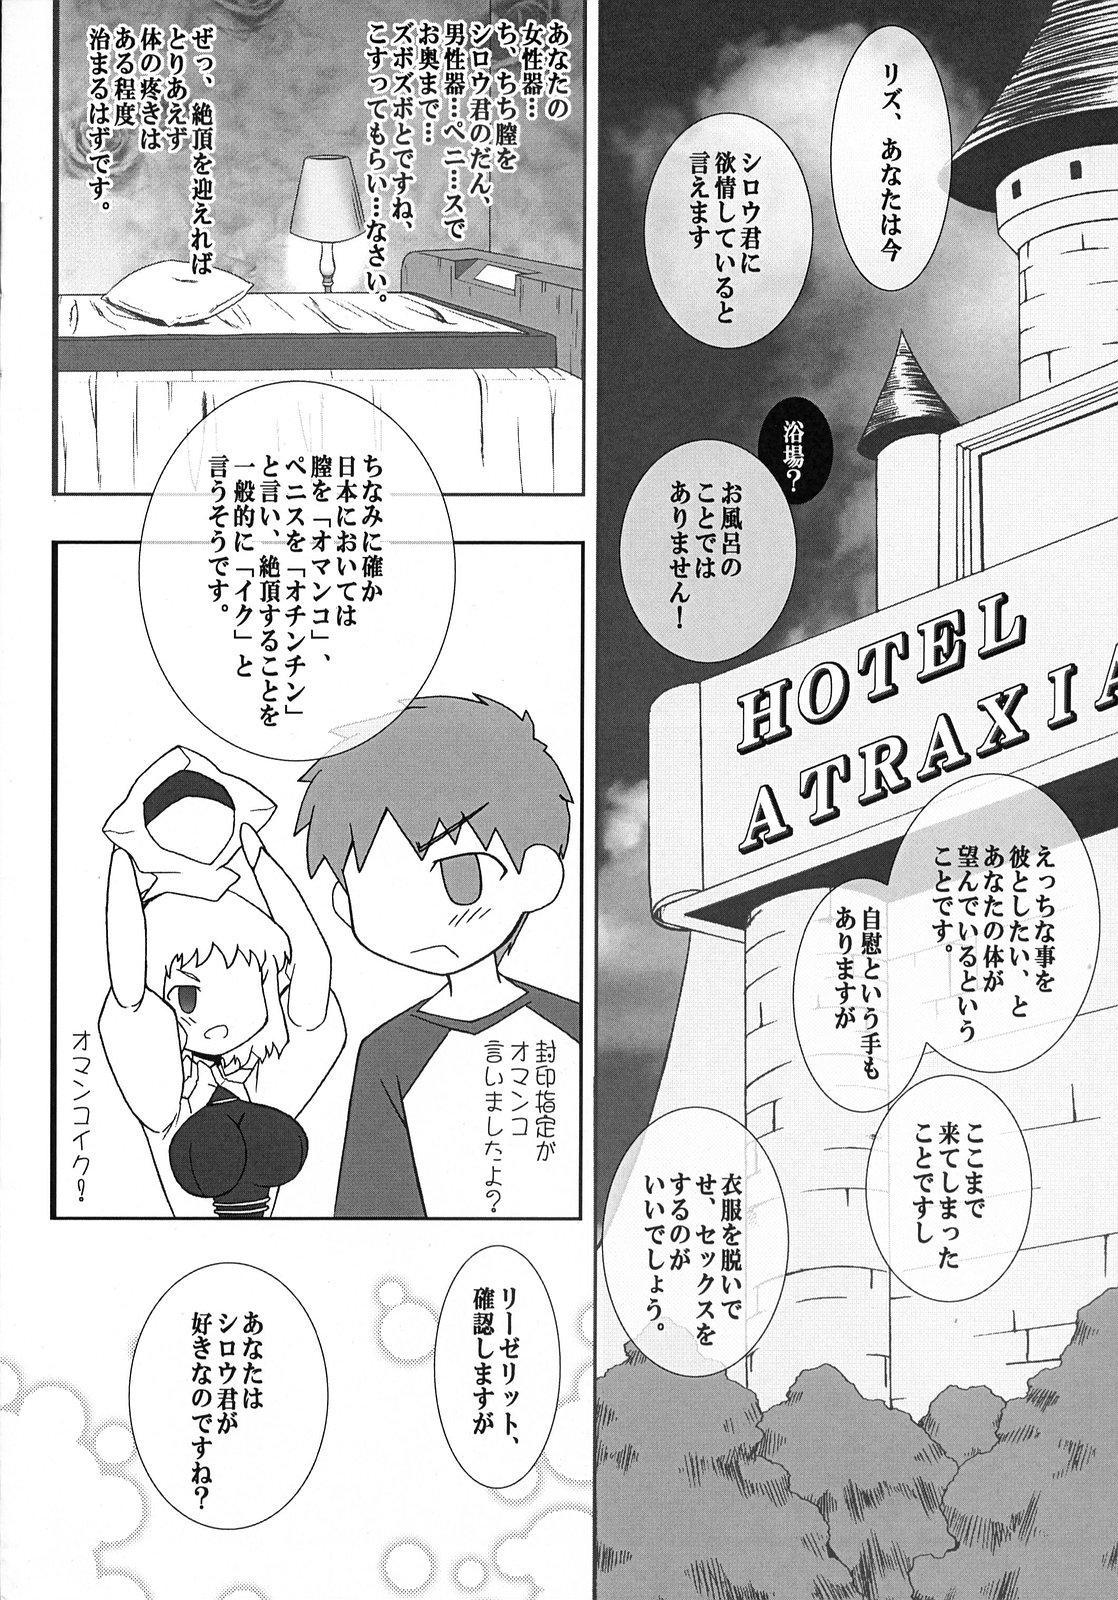 Bunduda (SC36) [Gachinko Shobou (Koban)] Yappari Leysritt (kyonyuu no hou)] wa eroi na. (Fate/hollow ataraxia) - Fate stay night Fate hollow ataraxia Hardcore - Page 6